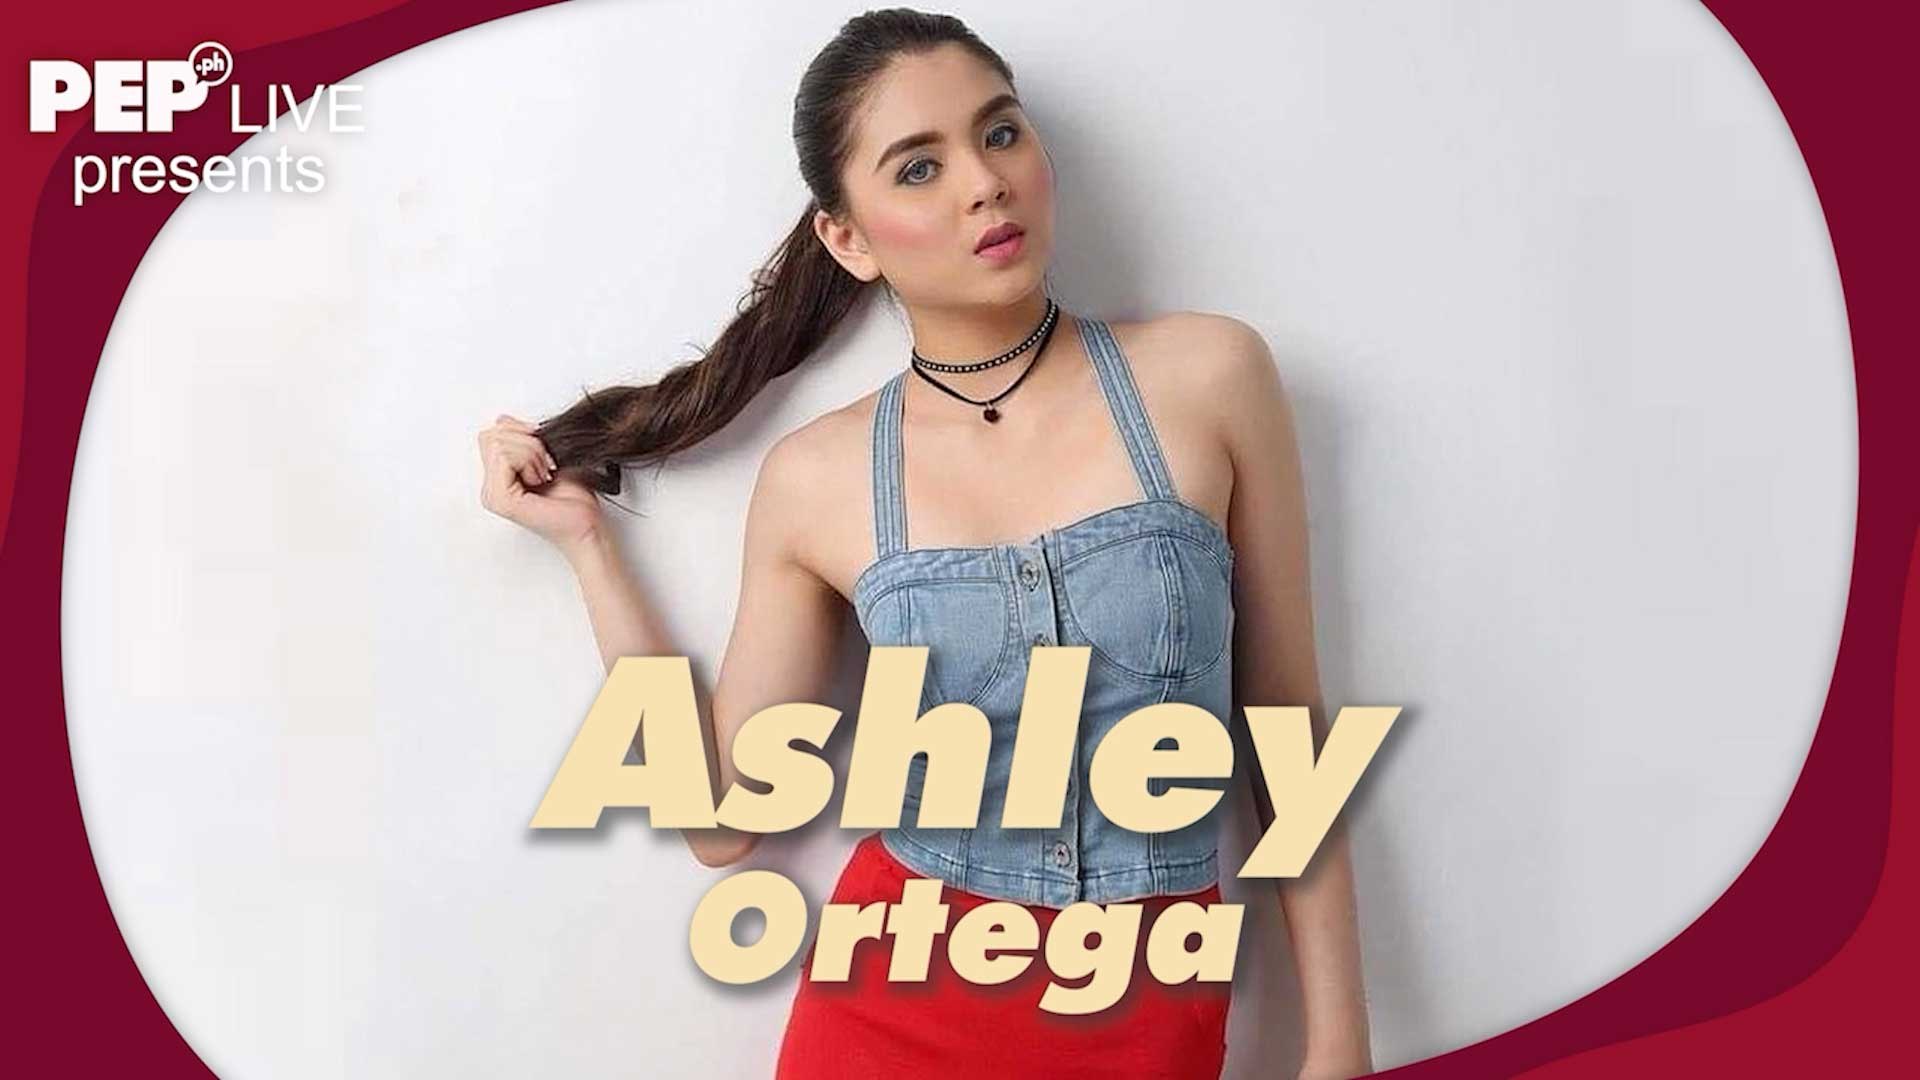 Ortega youtube ashley Ashley Ortega